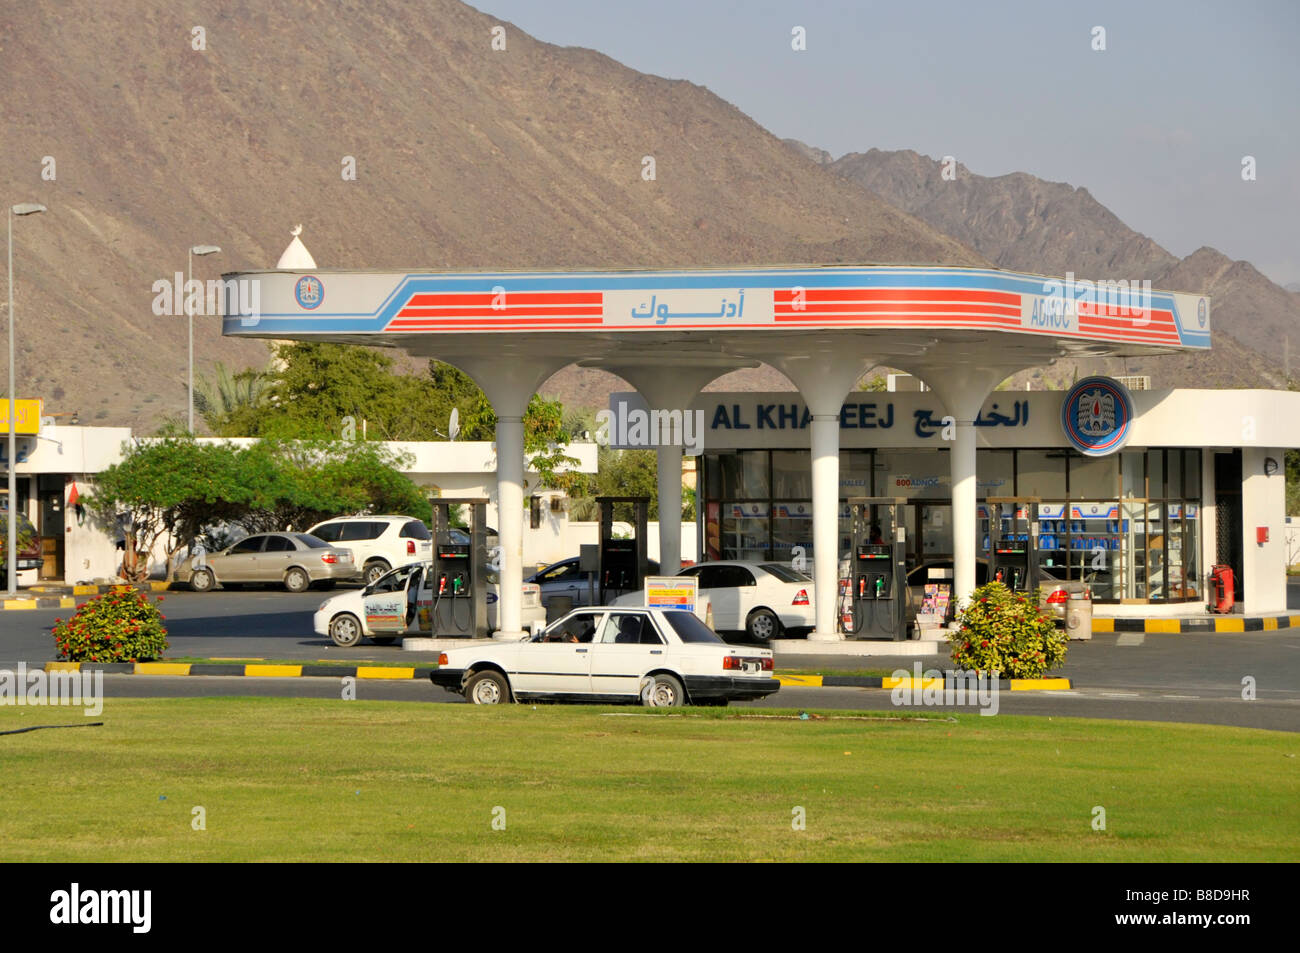 L'Emirato di Sharjah sul Golfo di Oman uno degli Emirati arabi uniti, tipica moderna stazione di riempimento benzina Foto Stock